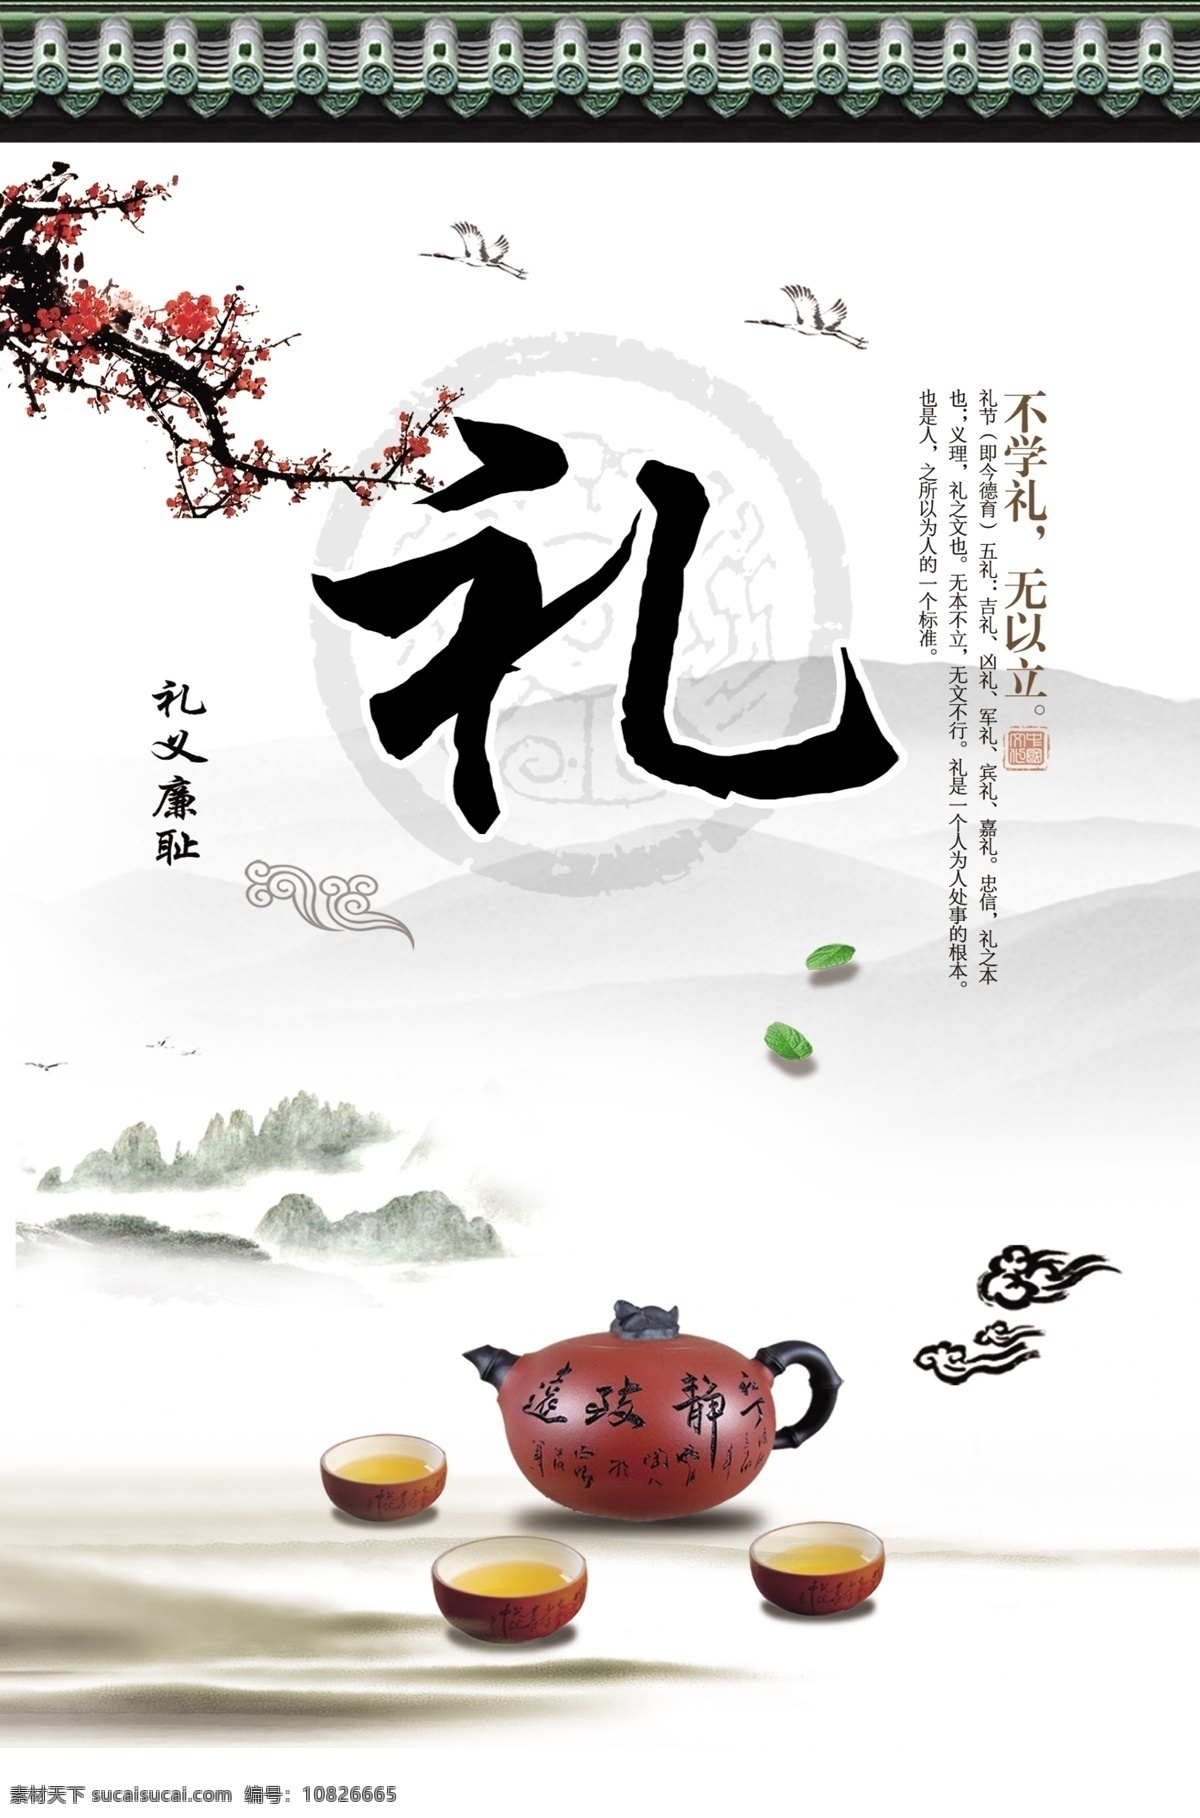 传统礼仪 礼仪文化 孝道文化 传统文化 中国古典 国学经典 分层